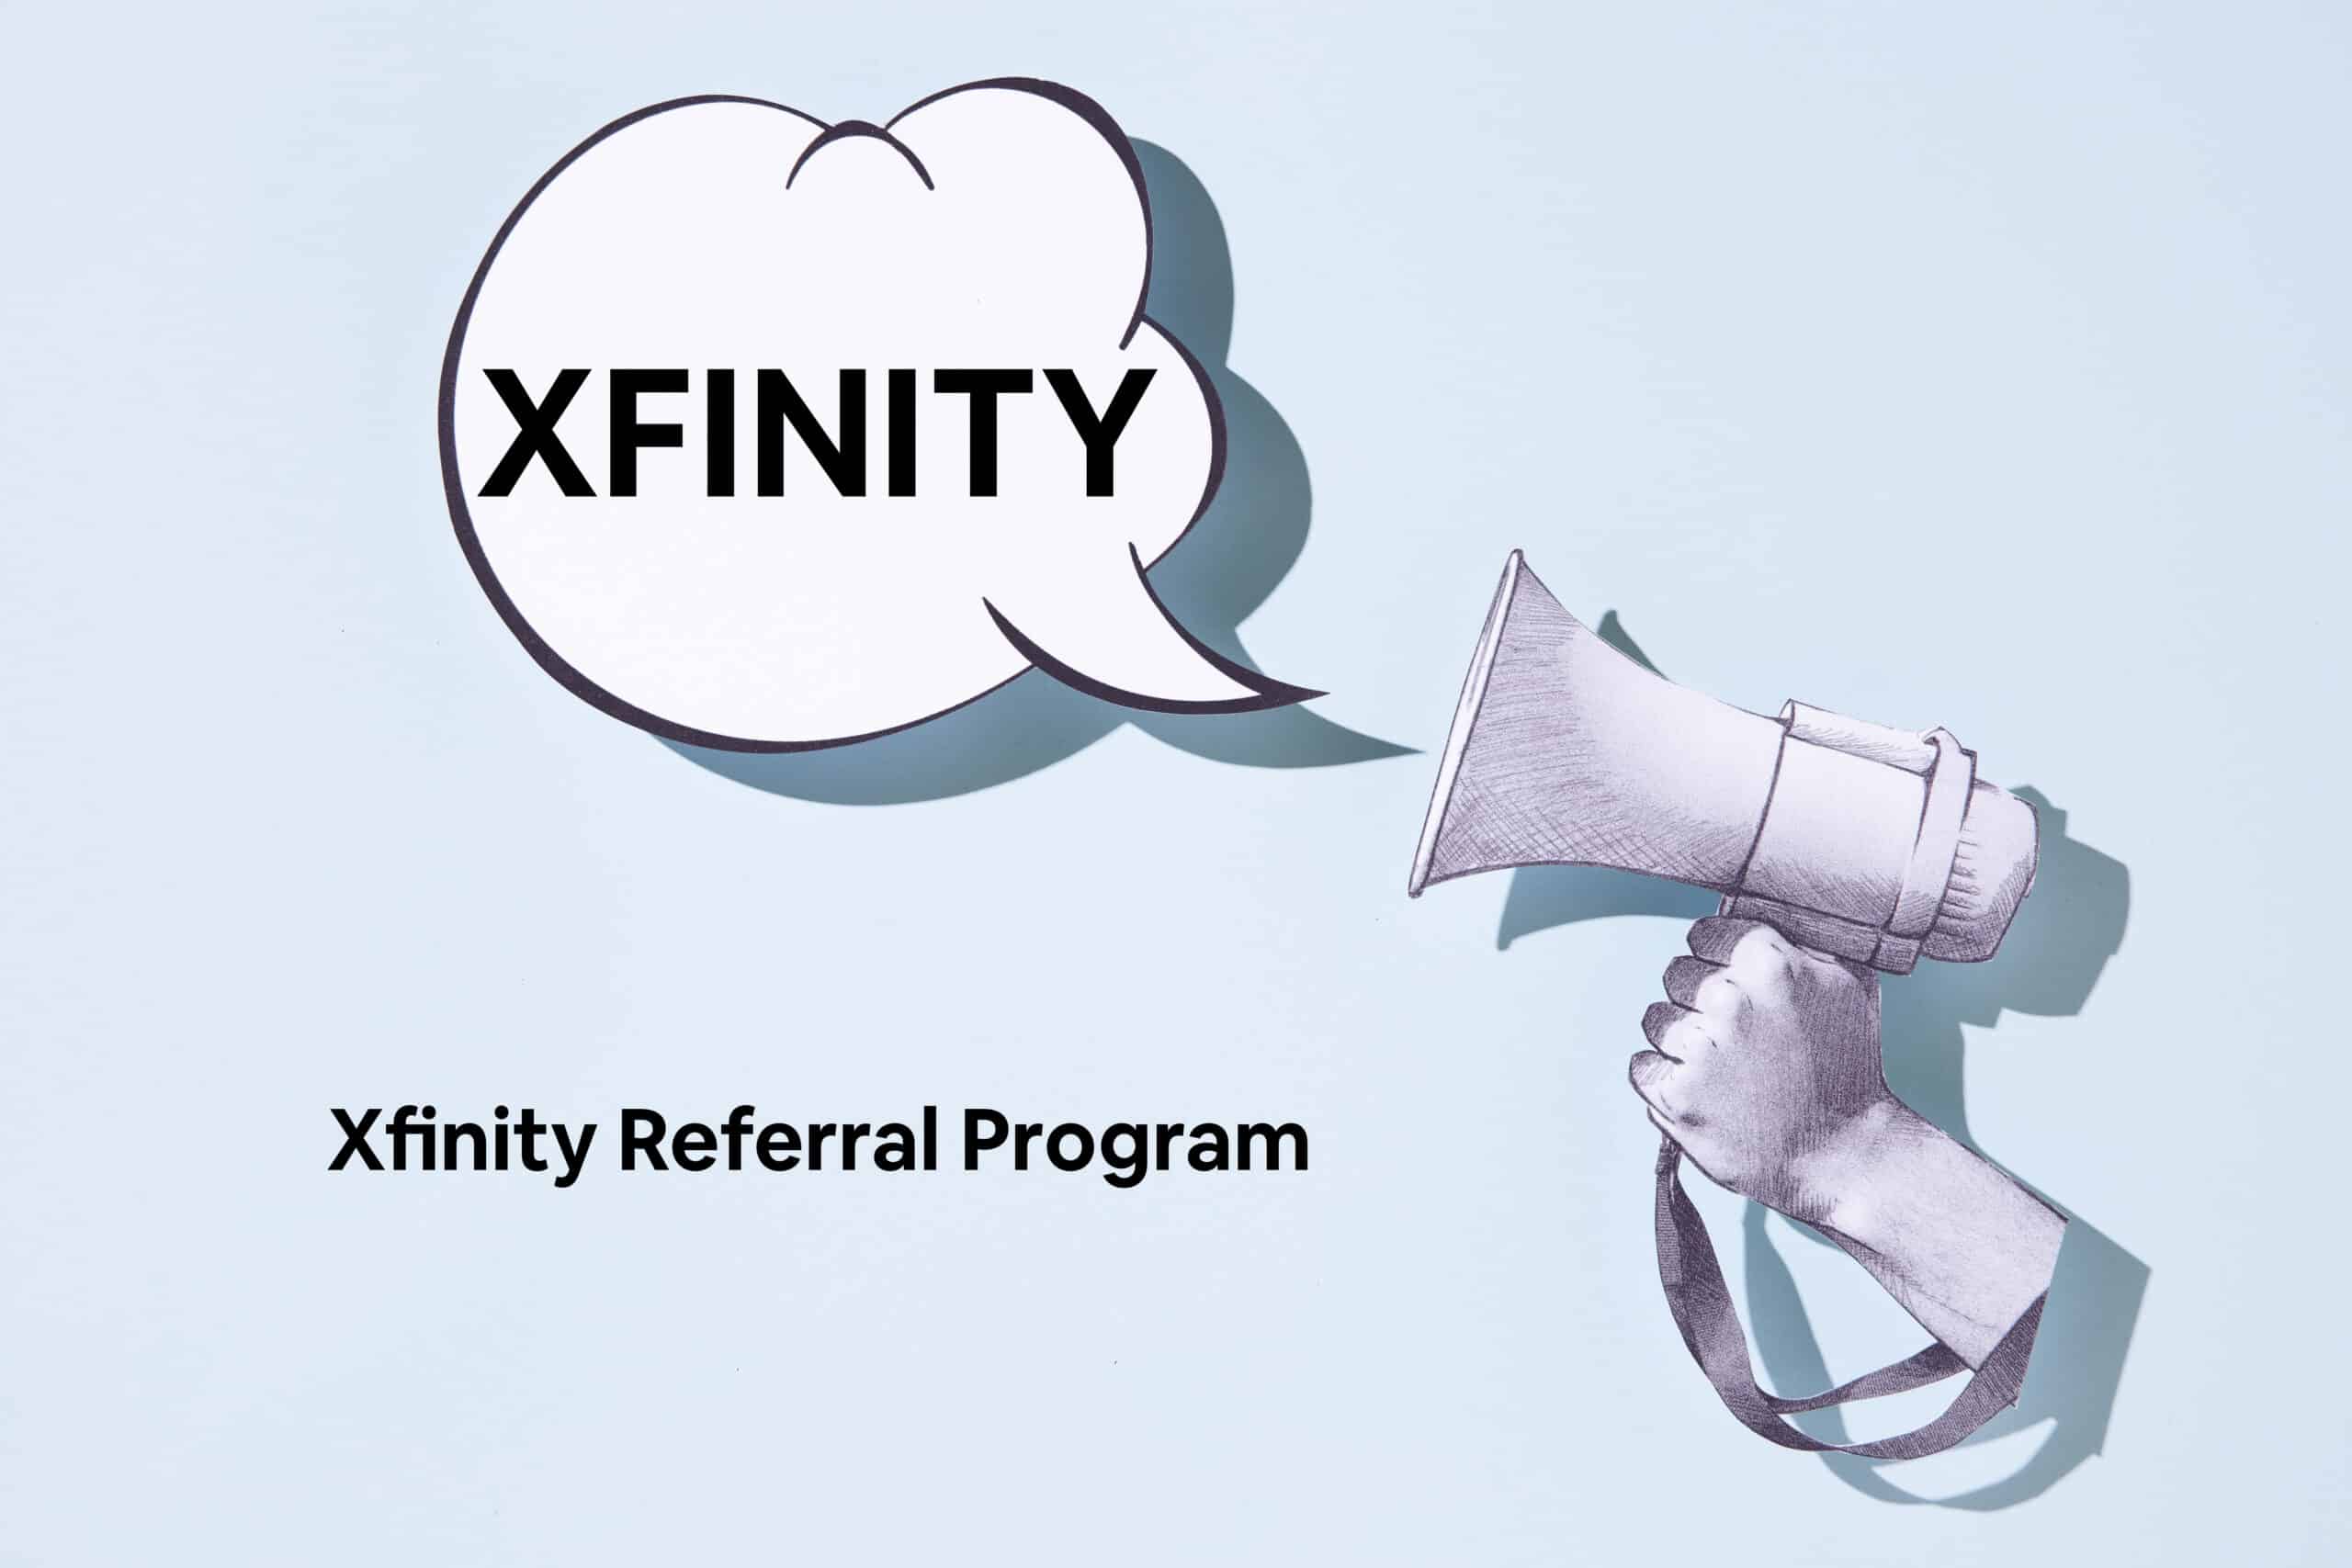 Xfinity referral